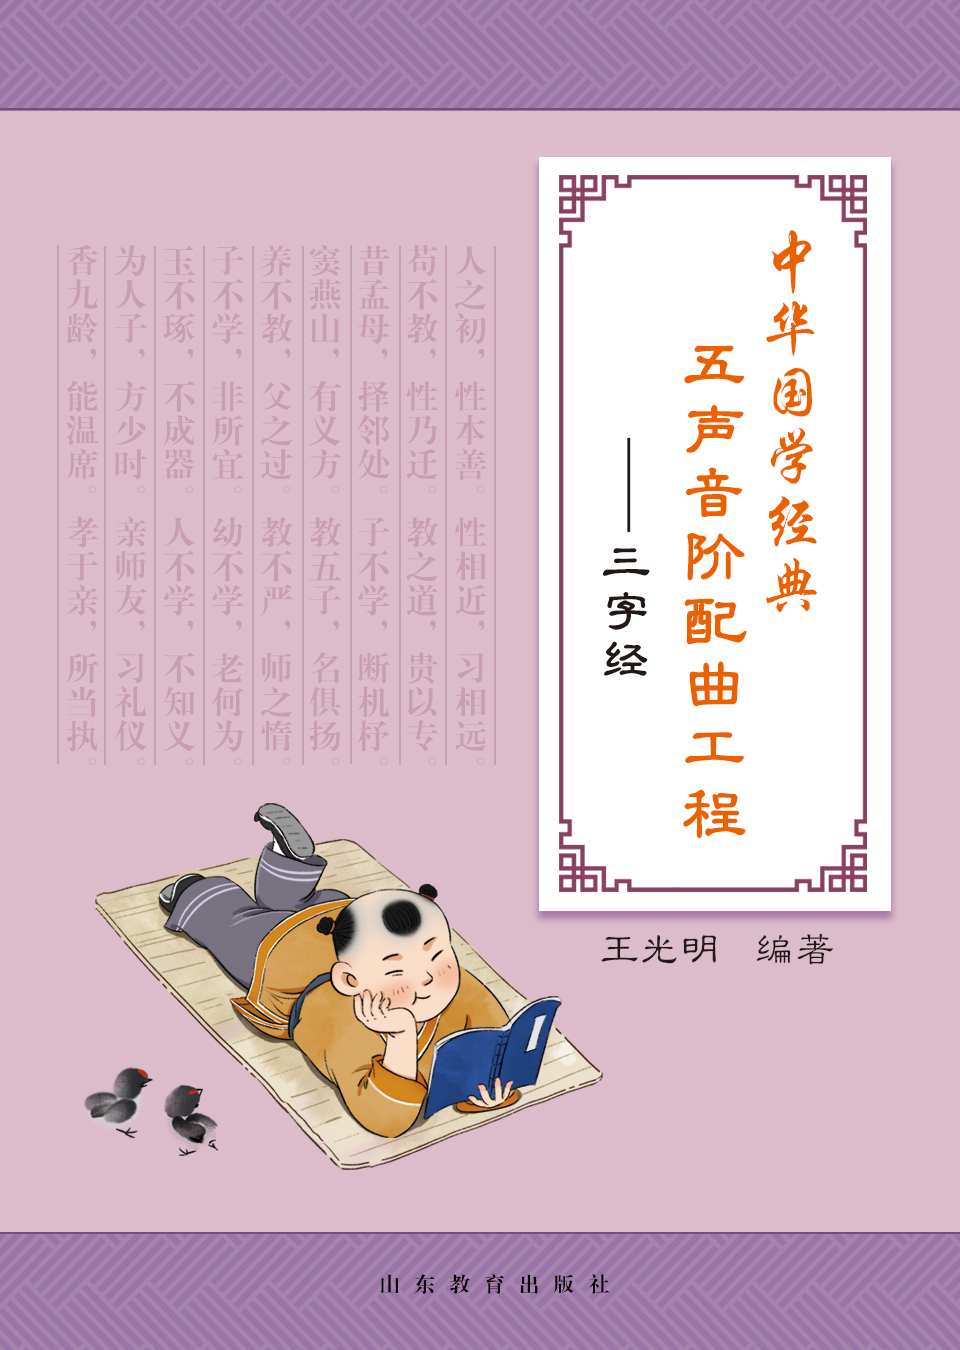 中华国学经典五声音阶配曲工程——三字经